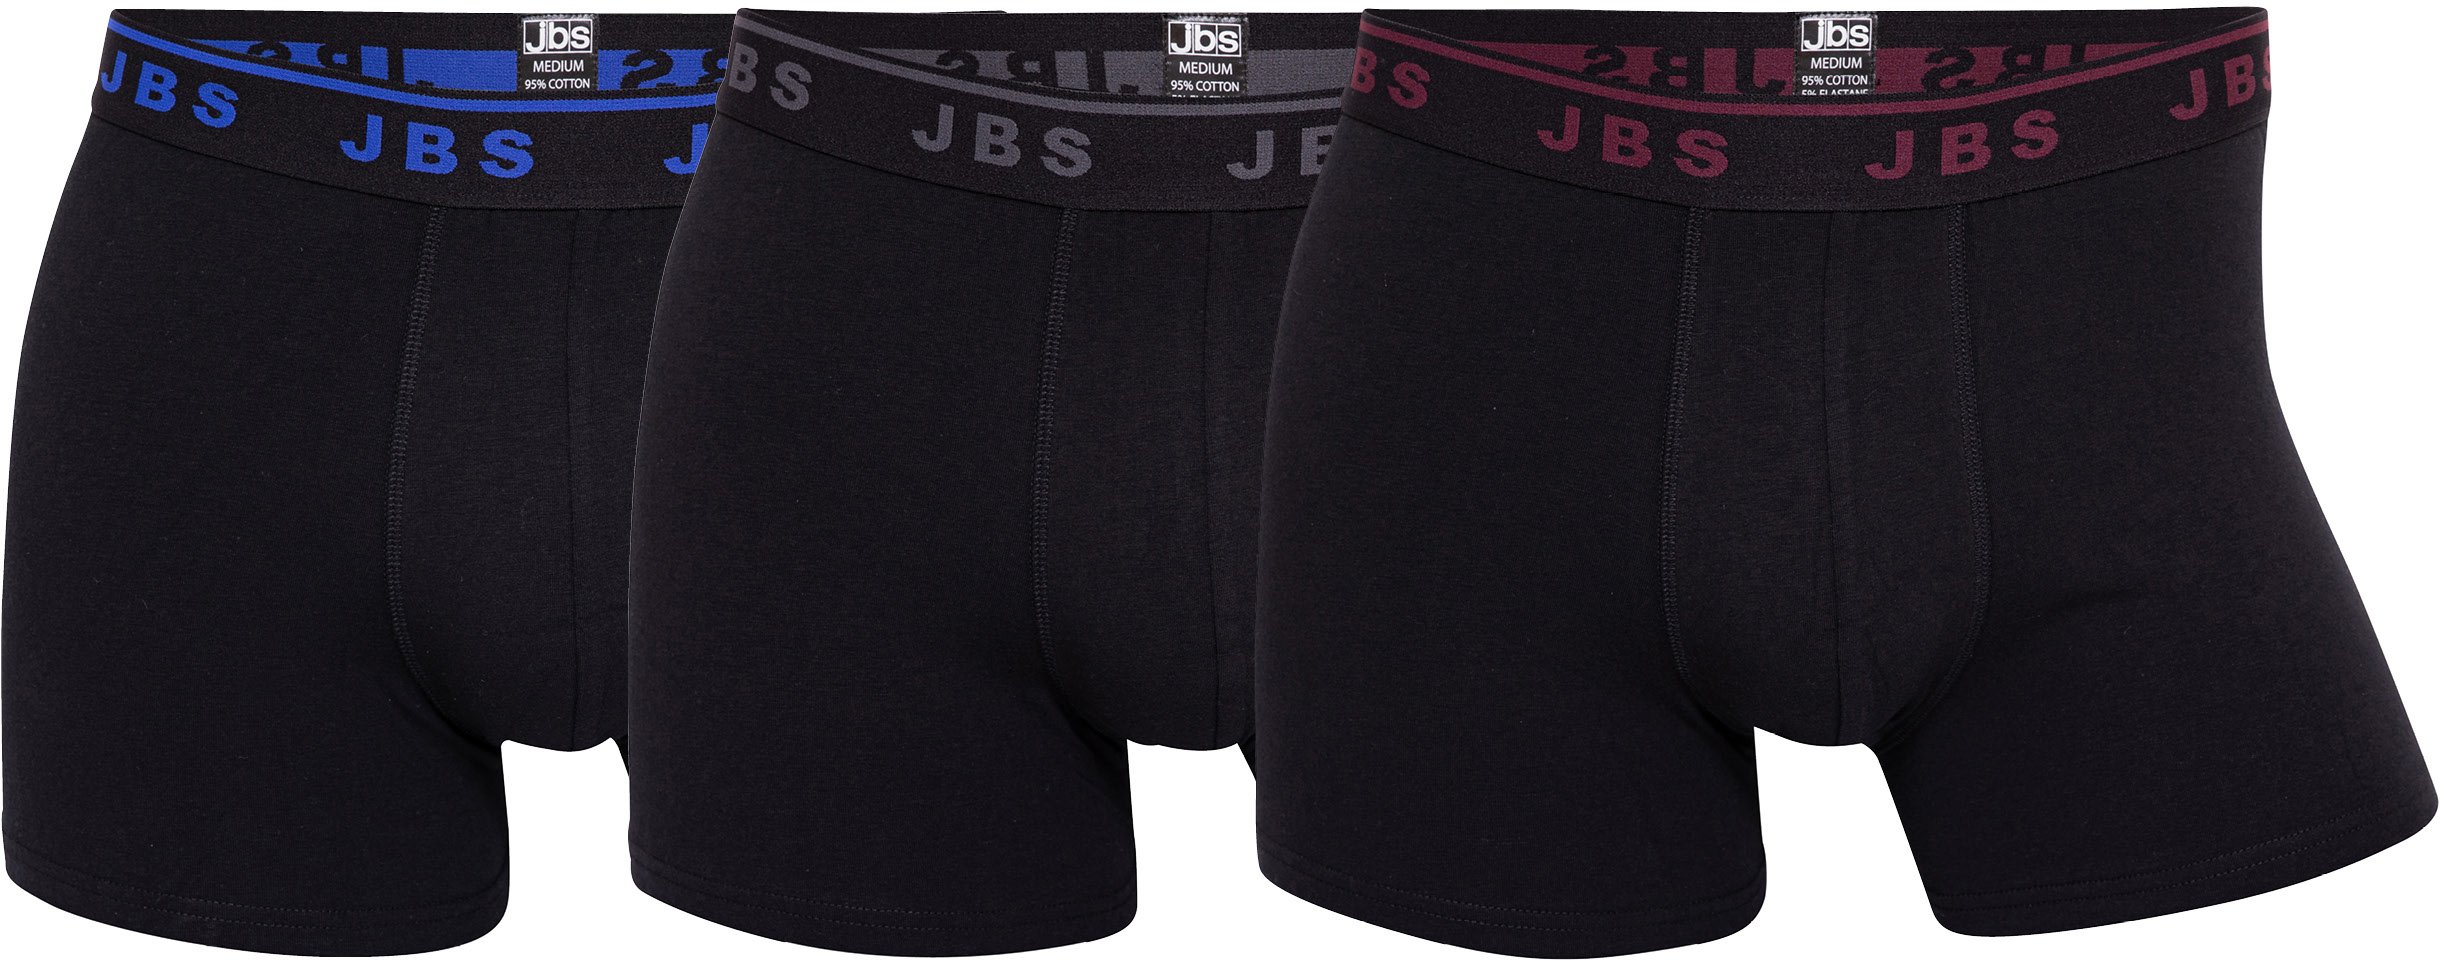 JBS - Tights 3-Pack - Black